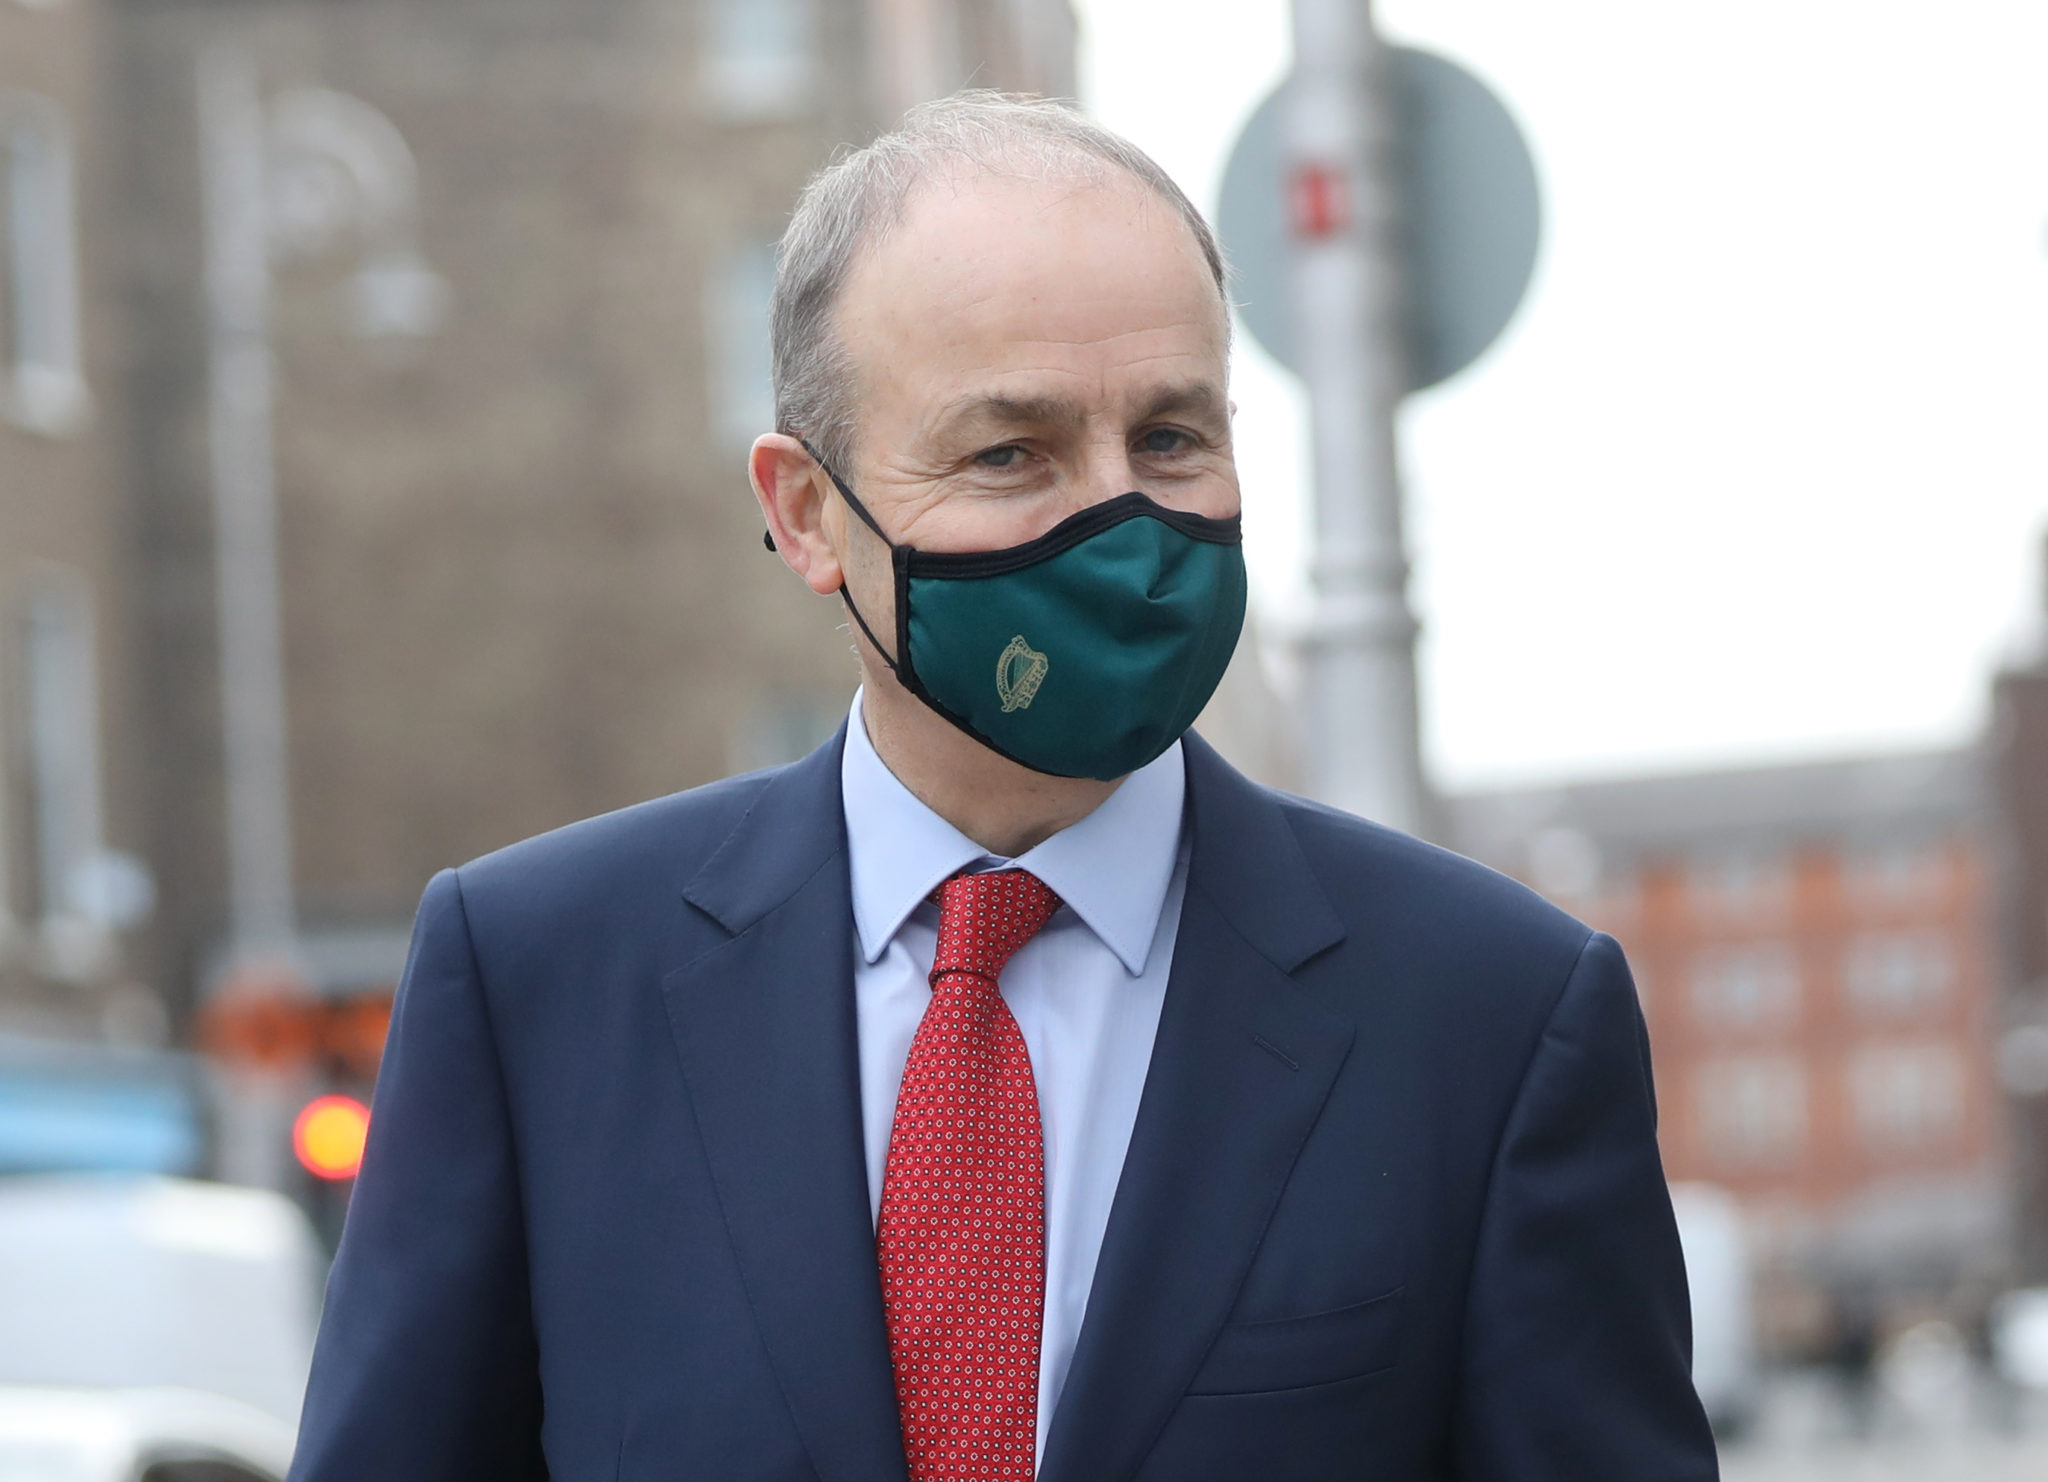 Taoiseach Micheál Martin wearing a face mask